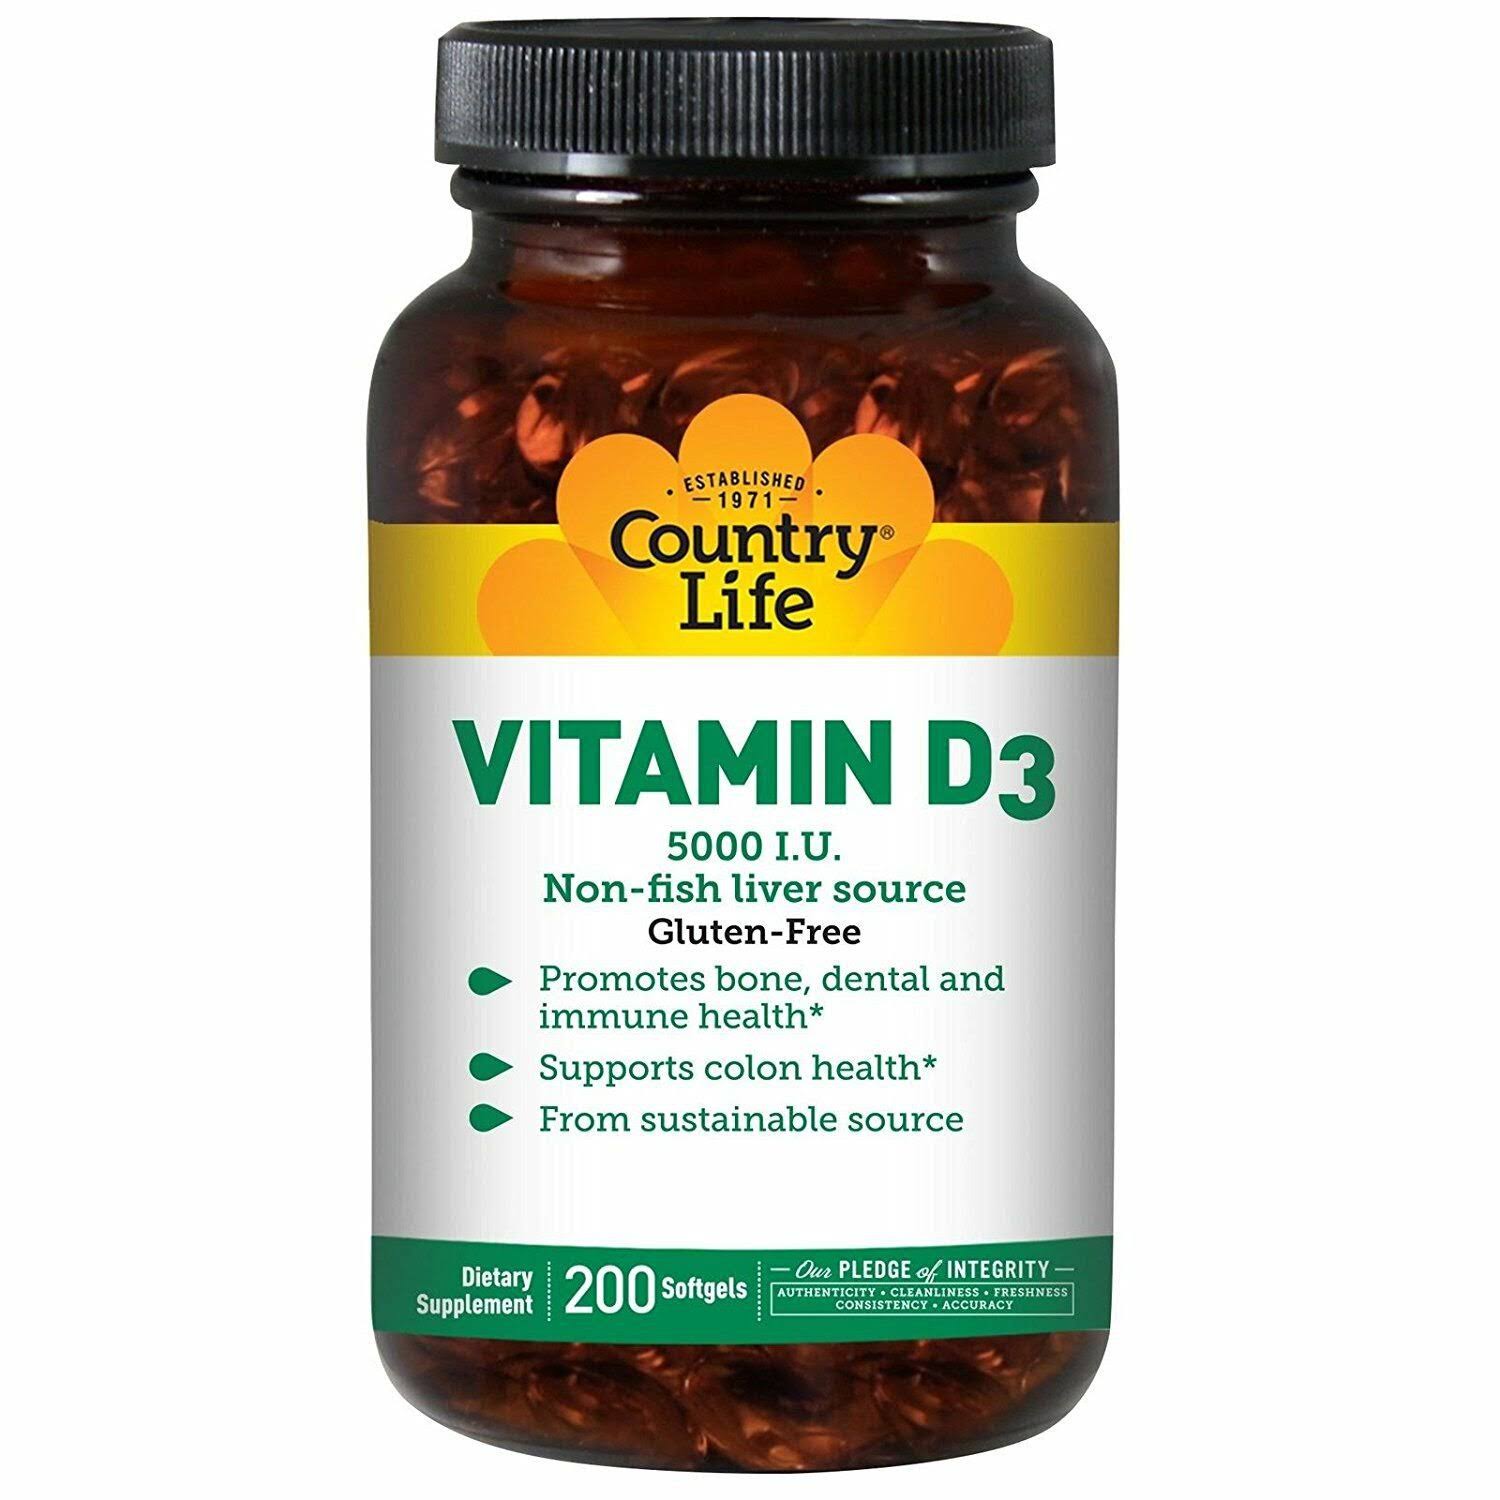 Country Life Vitamin D3 - 5000 IU, 200 Softgels